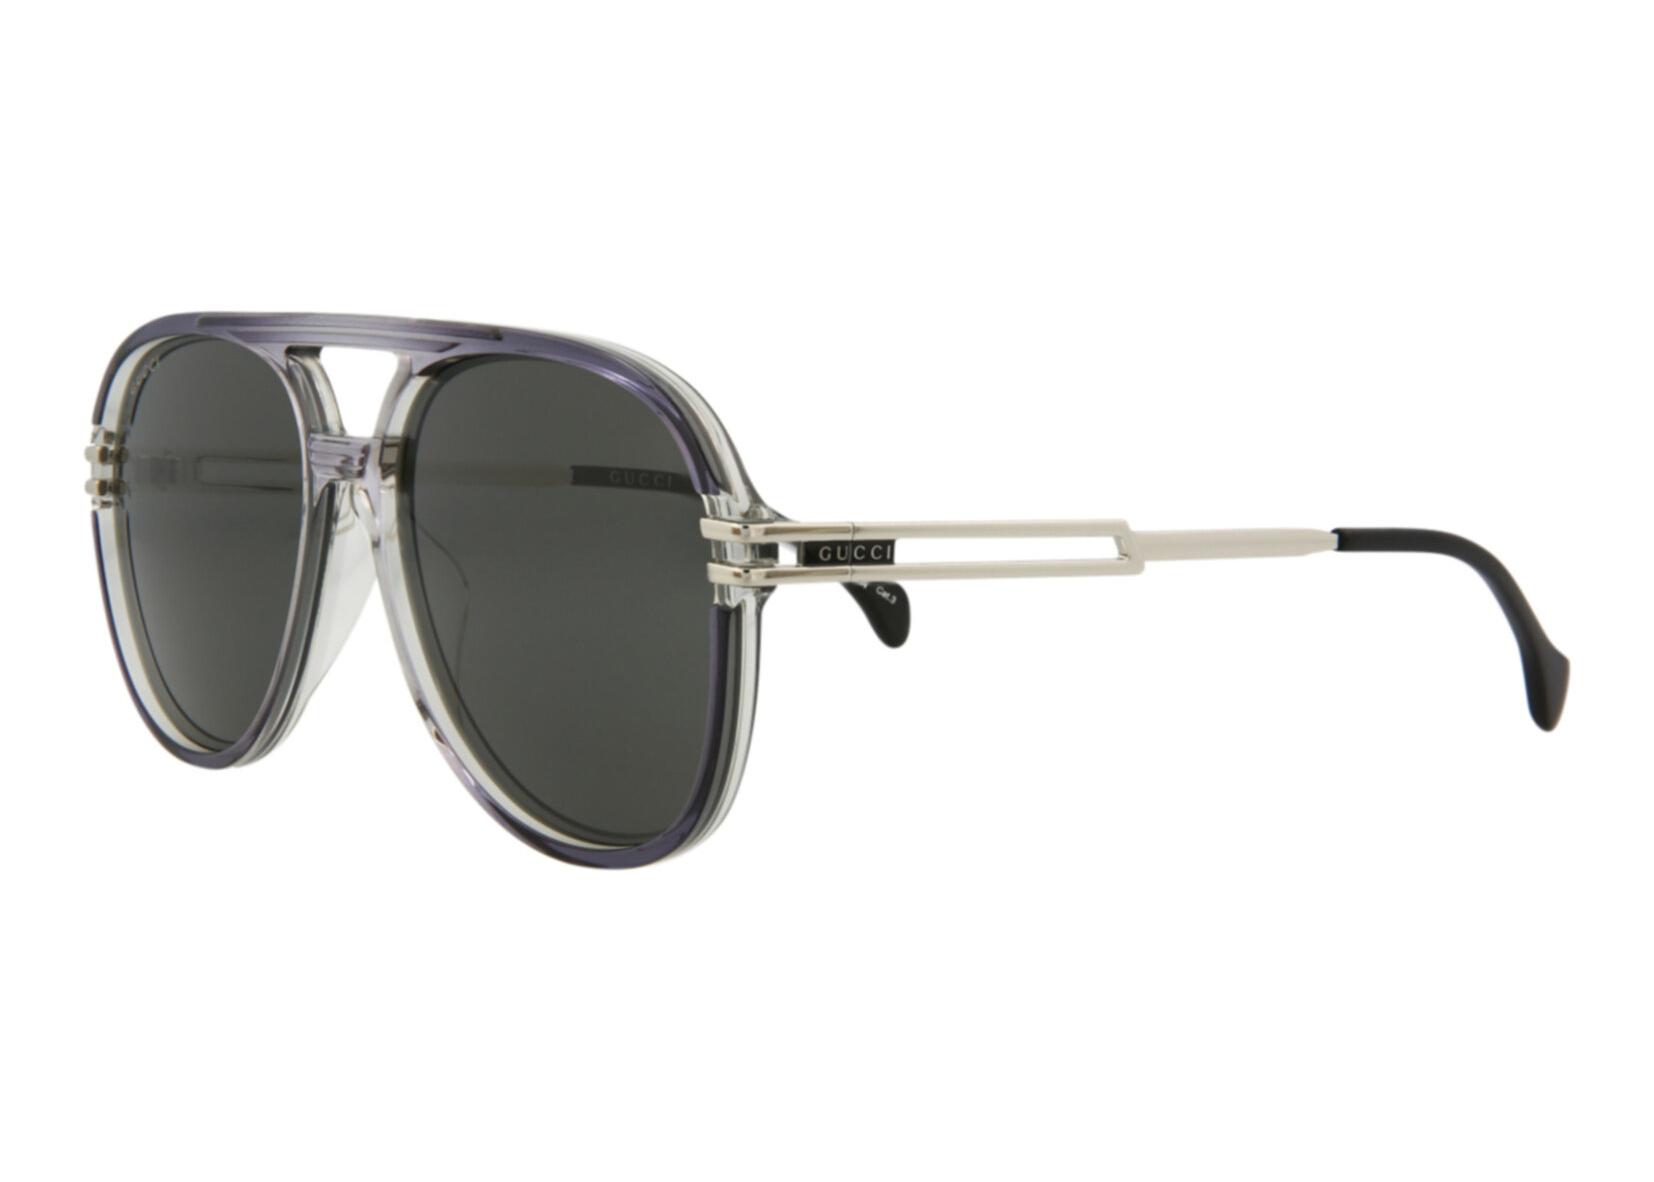 Gucci Aviator Sunglasses Grey/Silver/Grey (GG1104S-30012810-001 